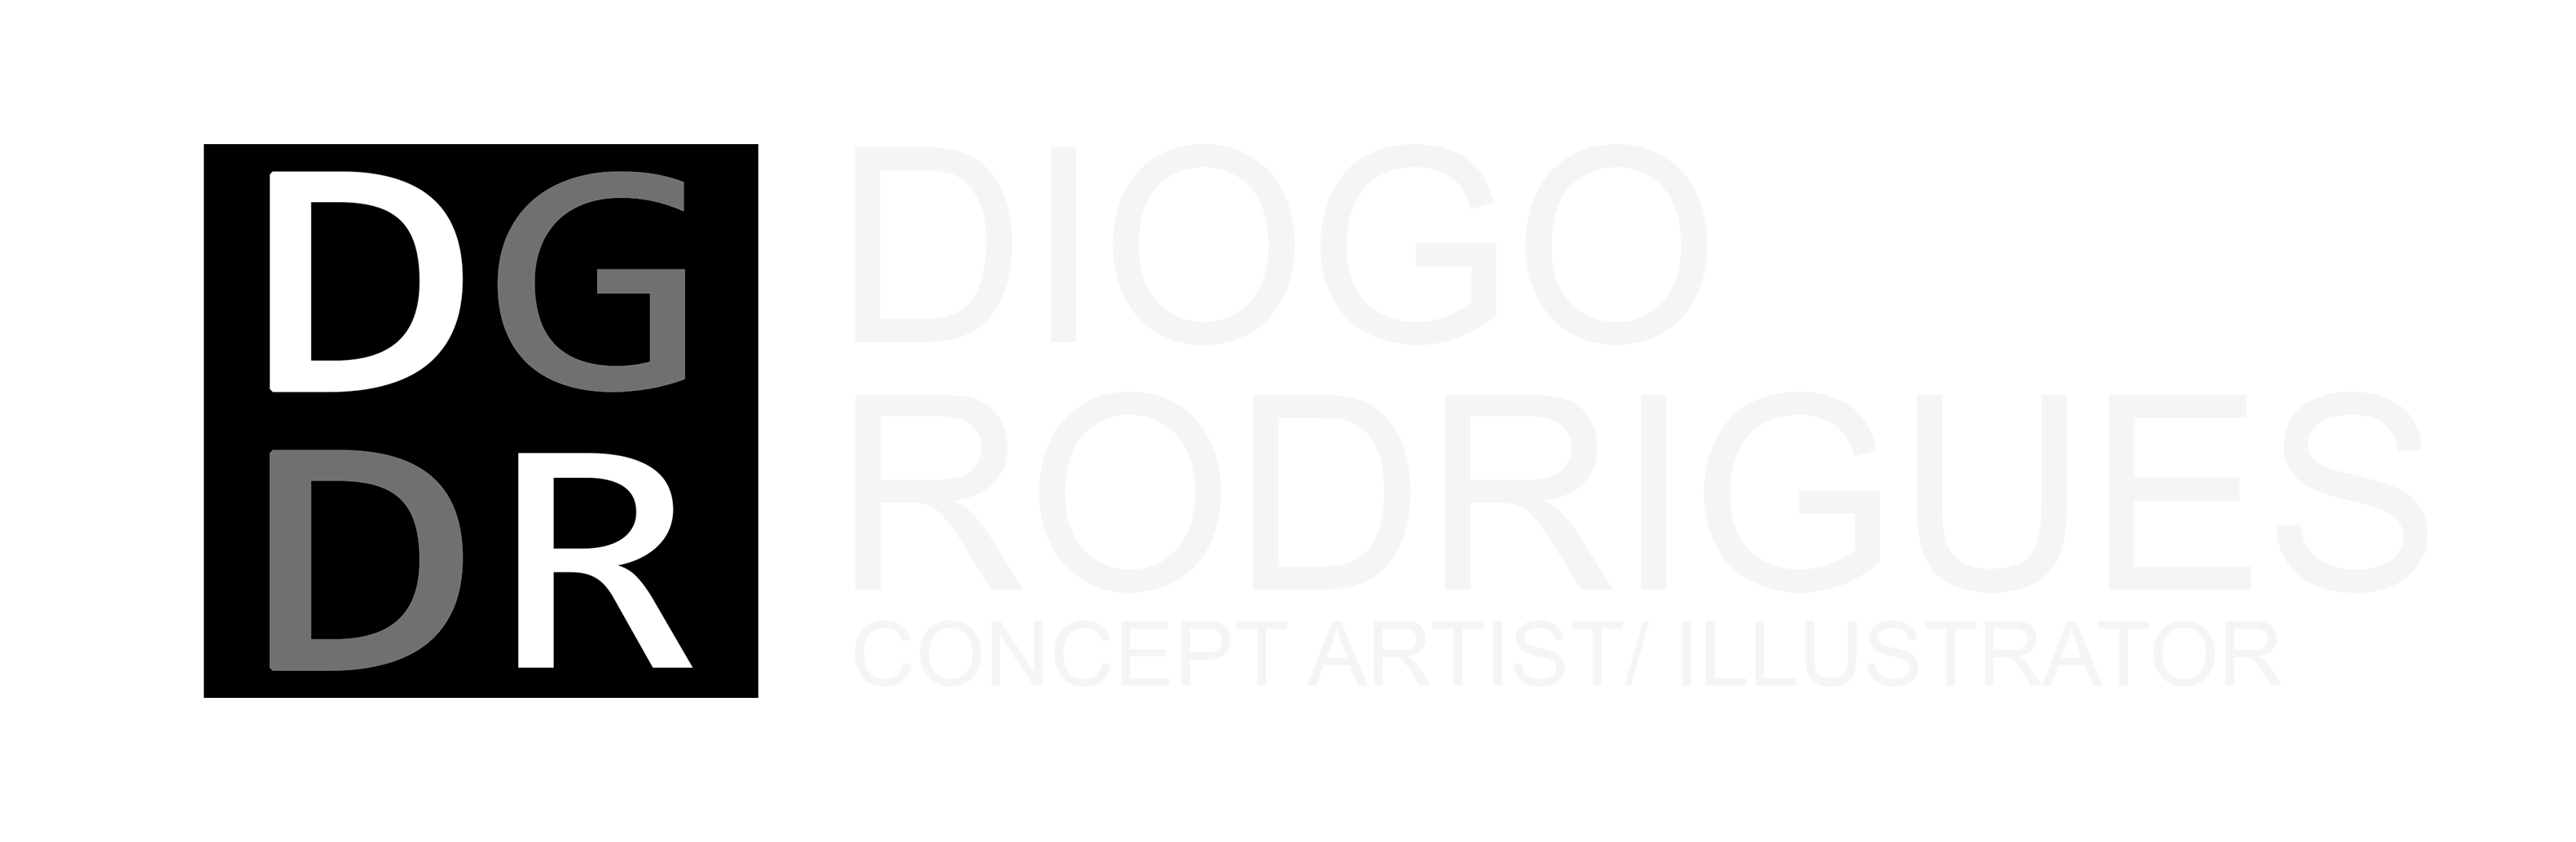 Diogo Rodrigues - Peças e acessórios agrícolas